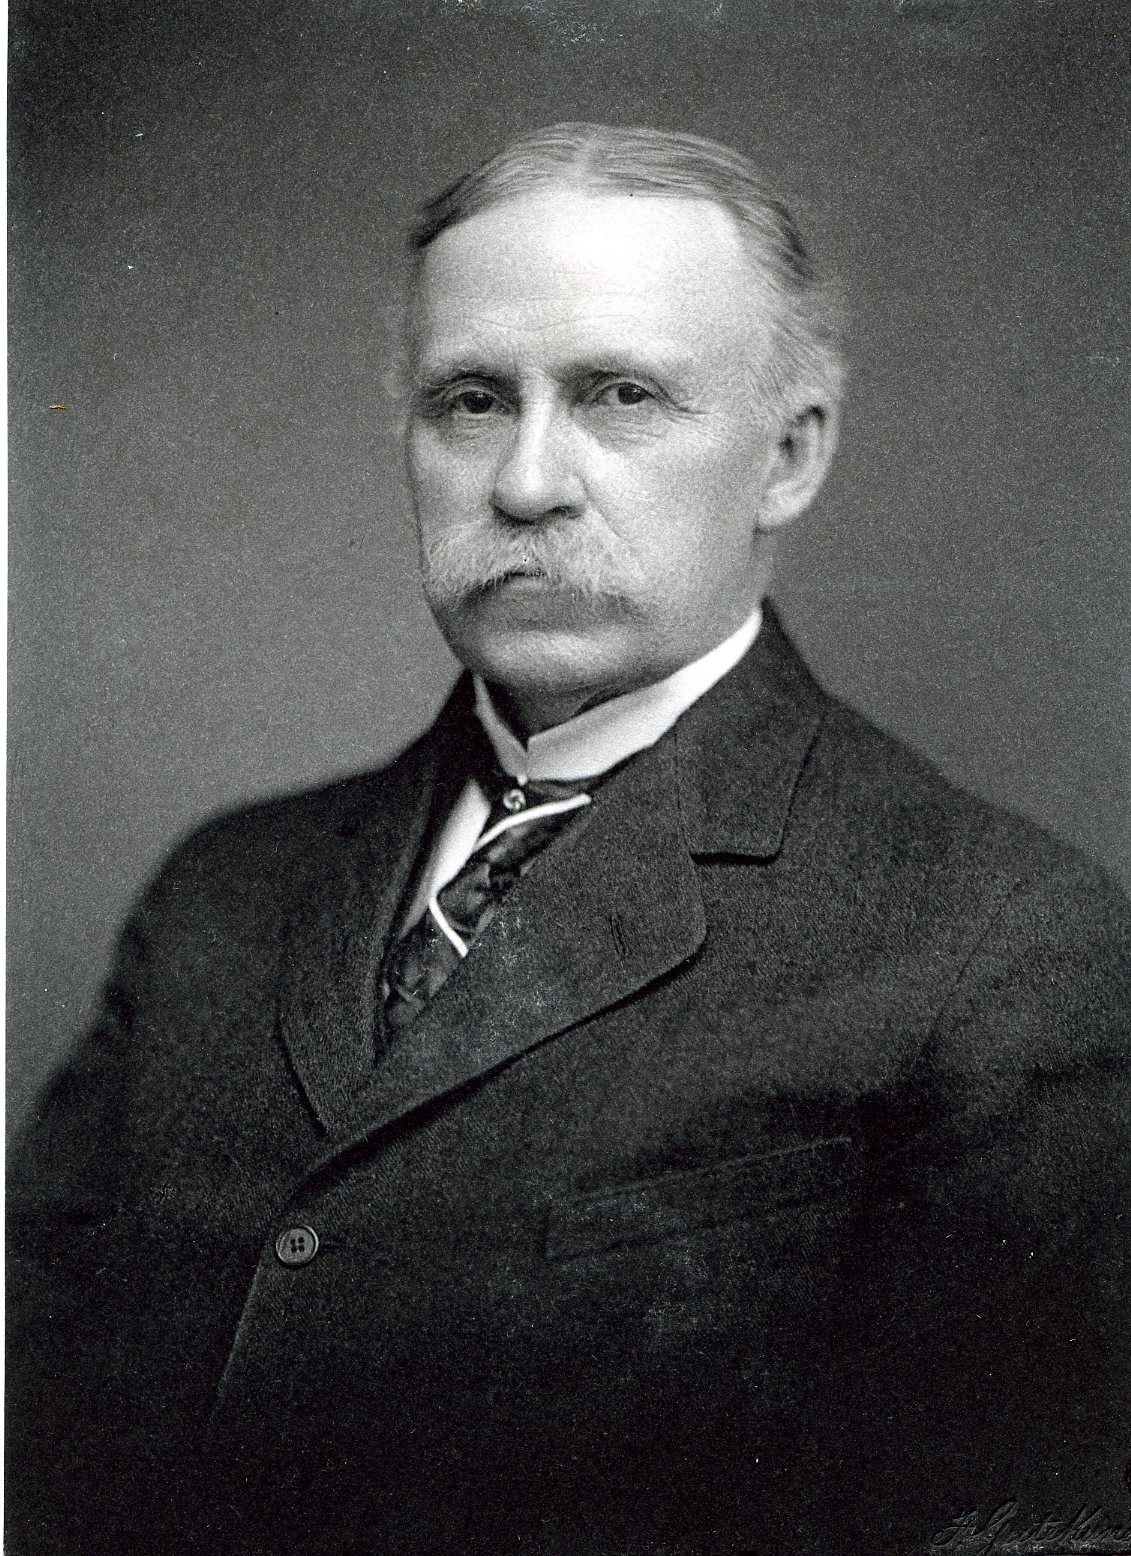 Member portrait of Harry Pratt Judson